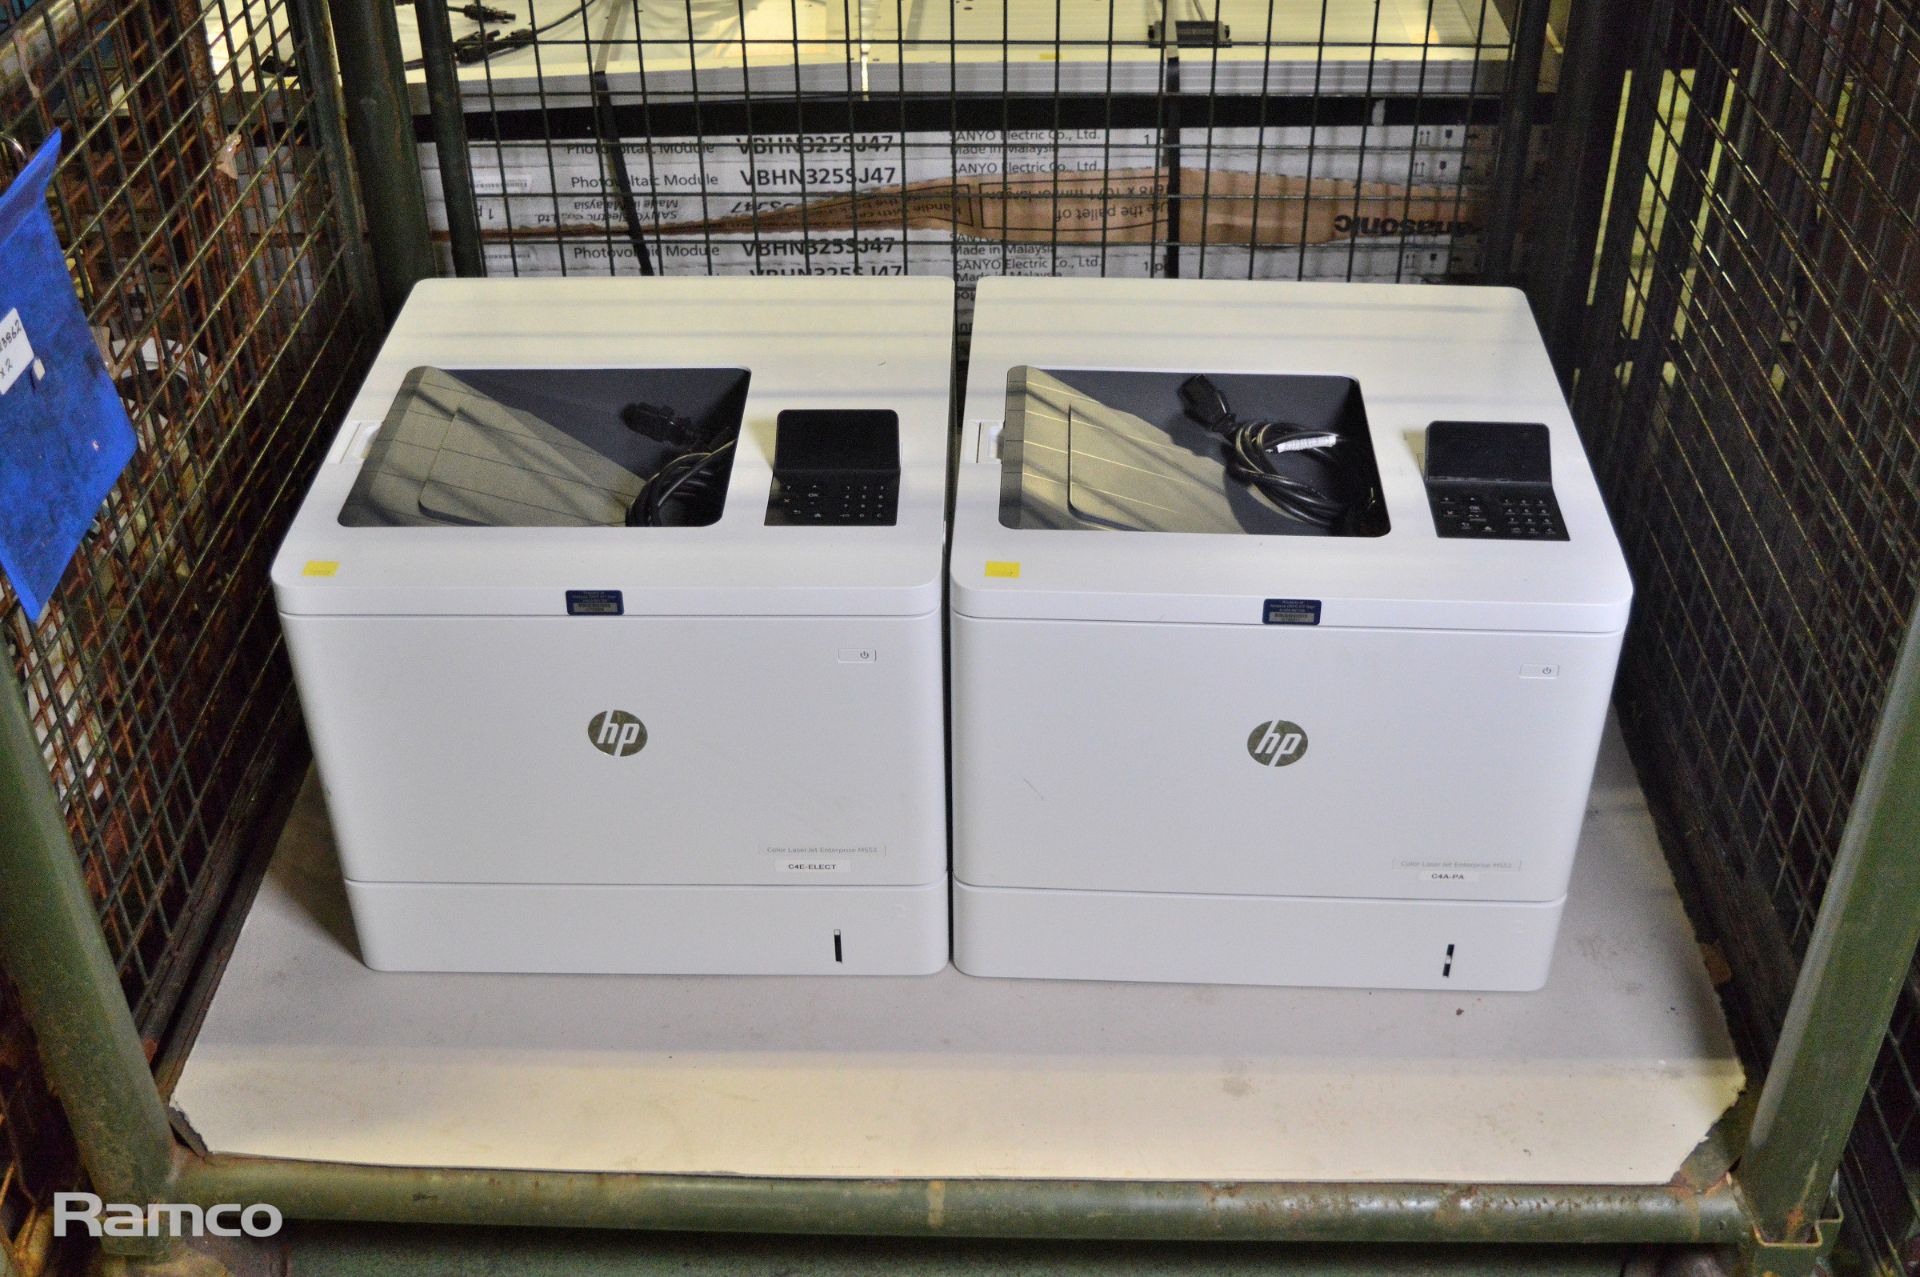 2x HP Laserjet enterprise M553 office printers